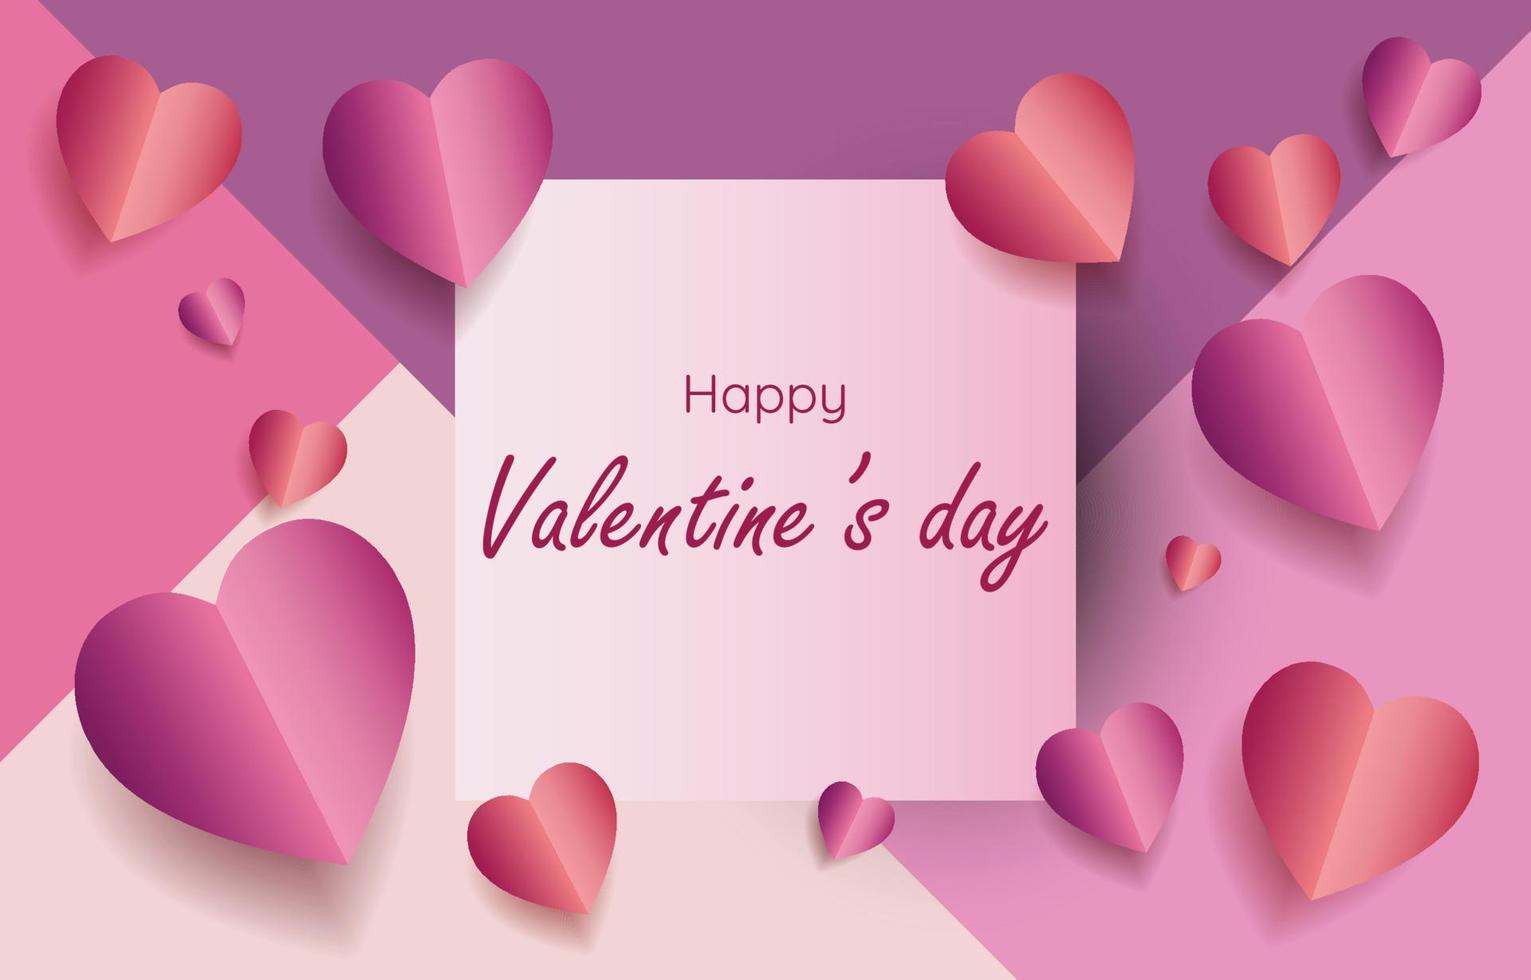 elementos de corte de papel en forma de corazón con marco cuadrado con un saludo de fondo rosa y dulce. símbolos vectoriales de amor por el feliz día de san valentín, diseño de tarjetas de felicitación. vector